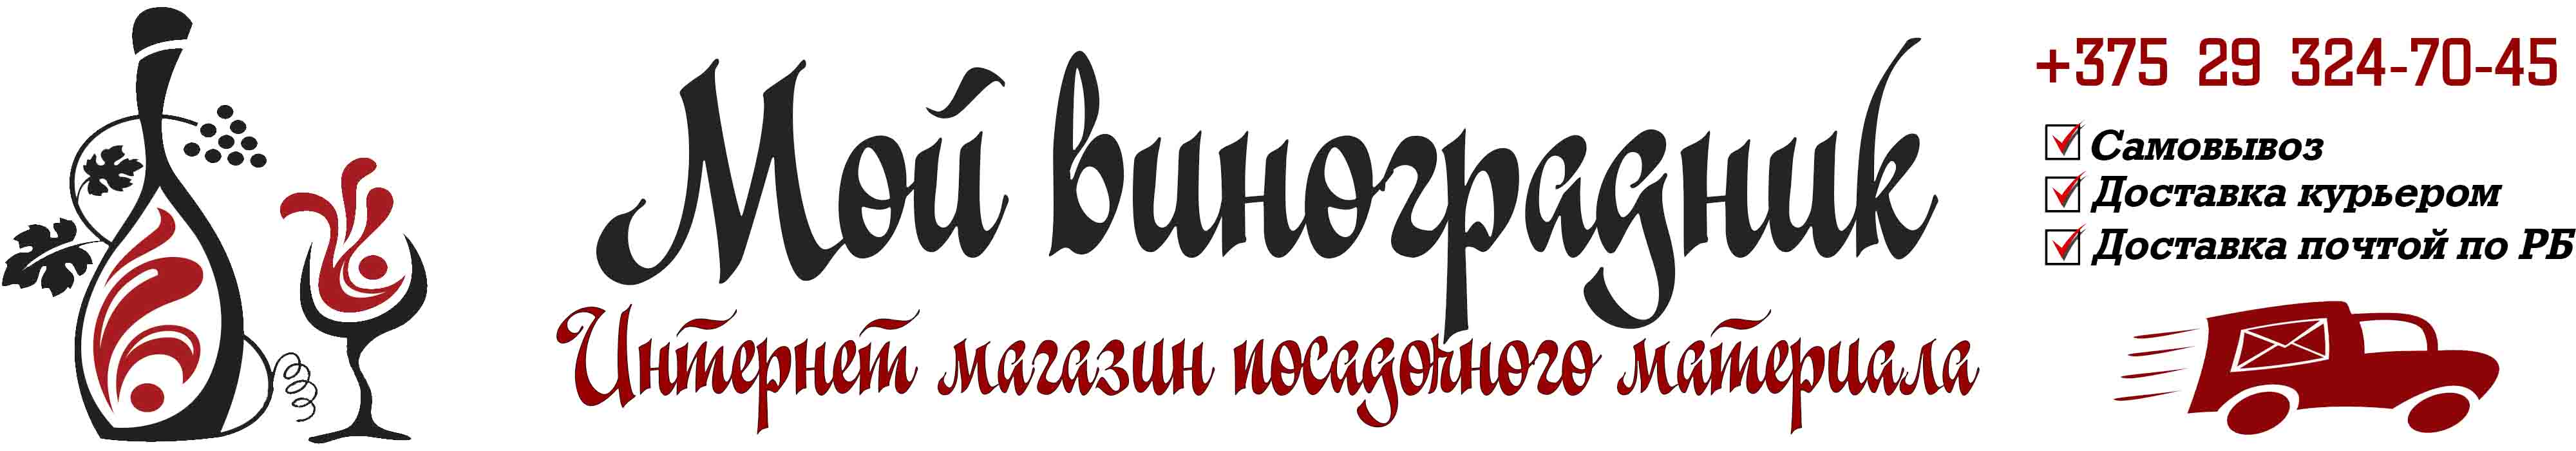 Купить саженцы винограда в Гомеле и почтой по Беларуси